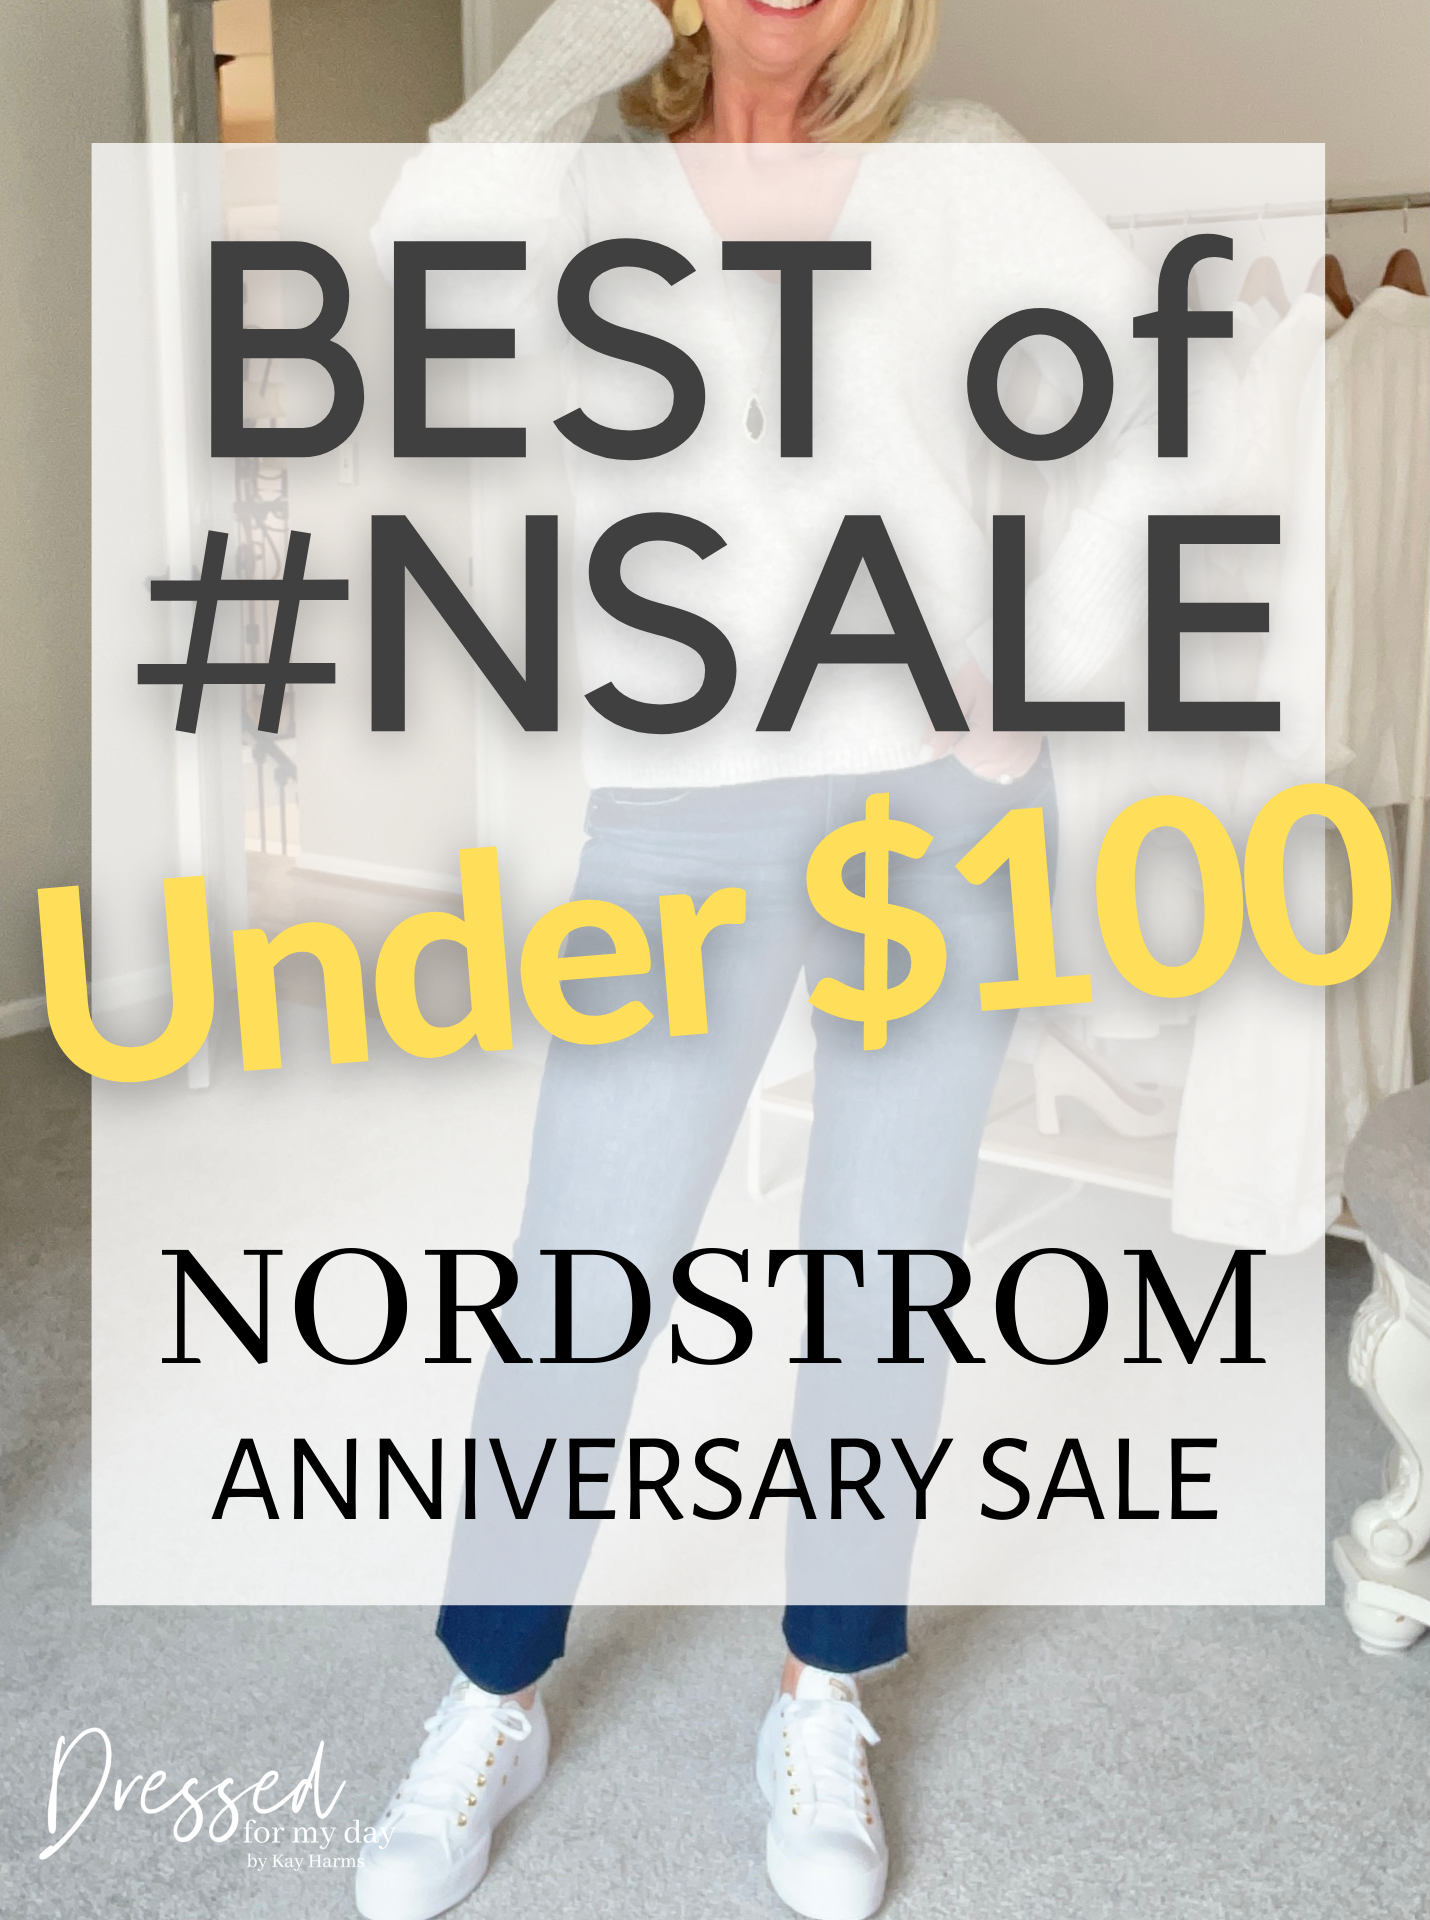 Best of NSale Under $100